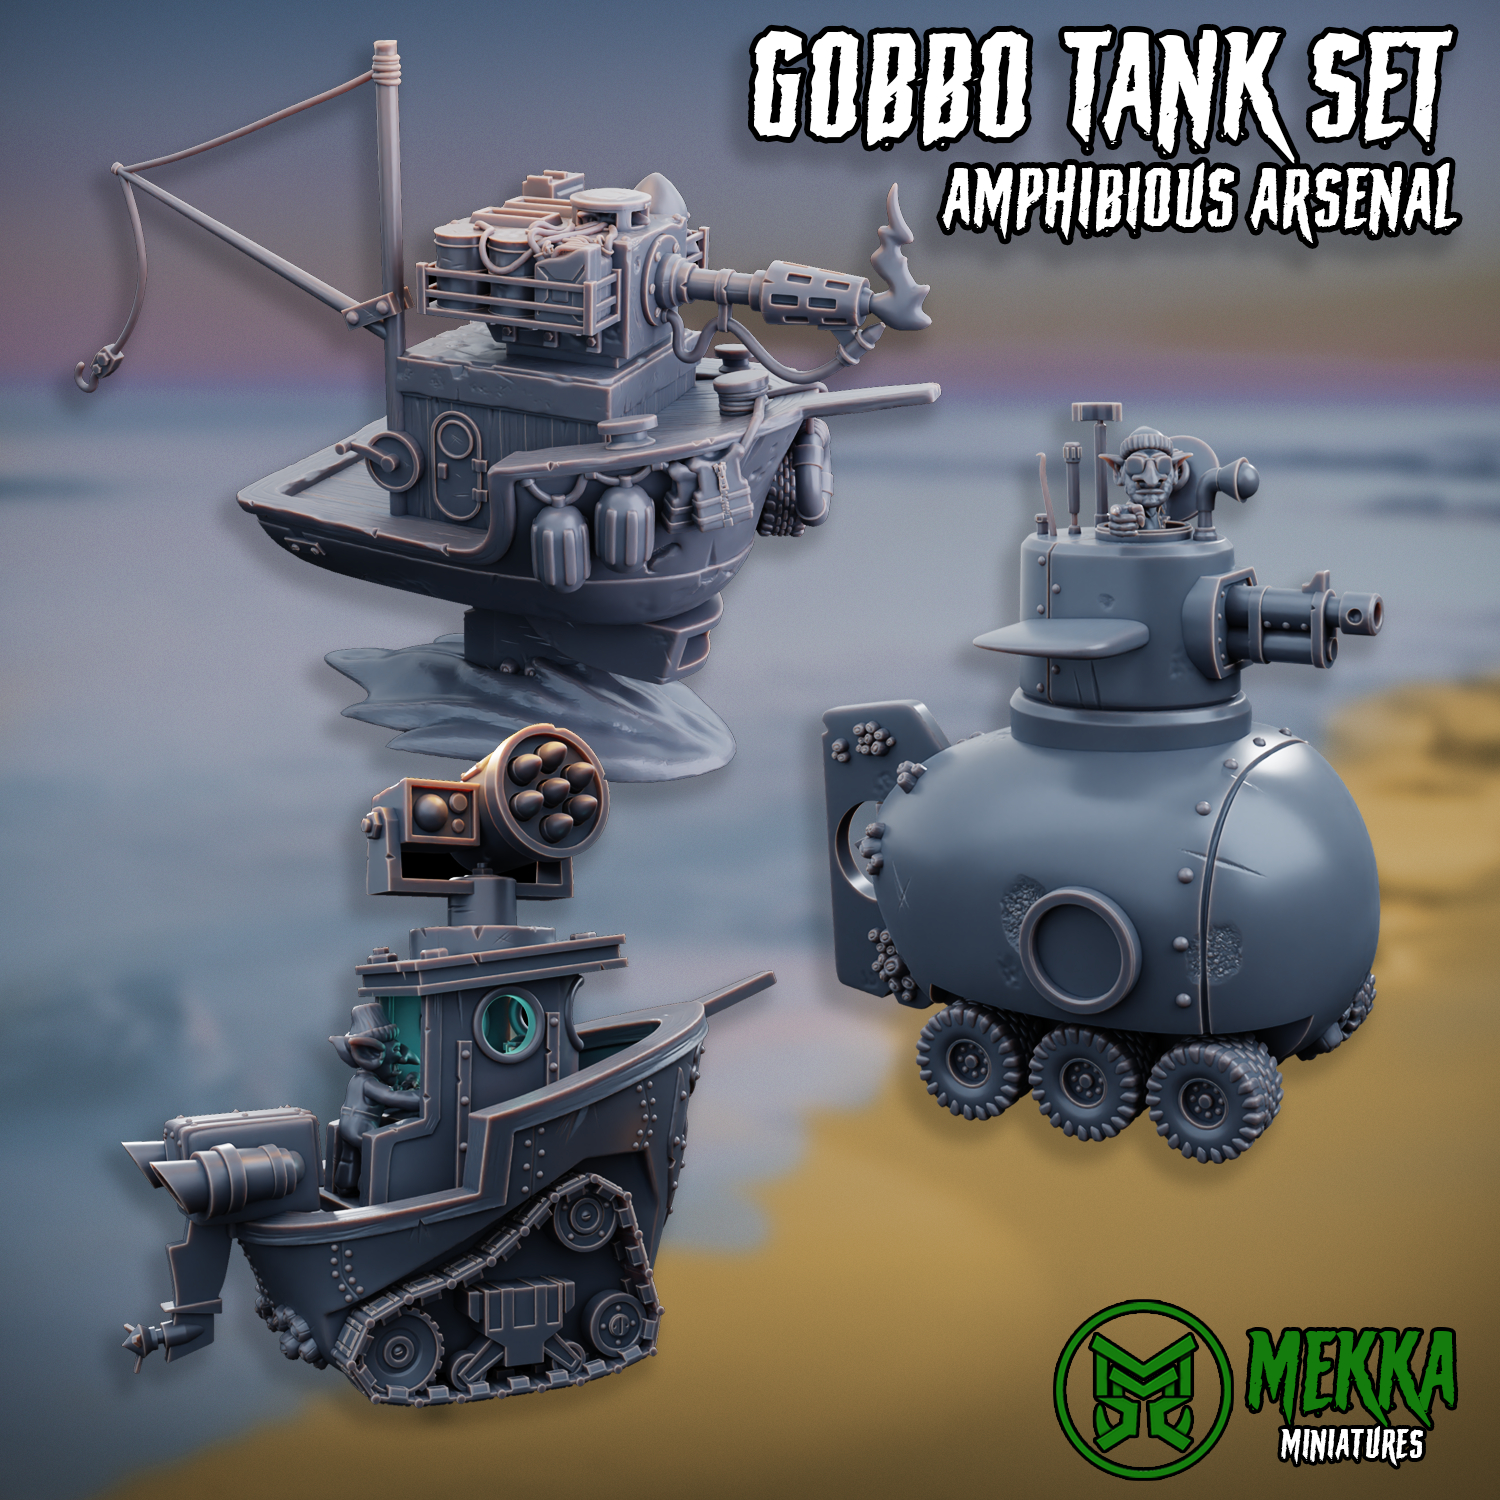 Gobbo Tank #2